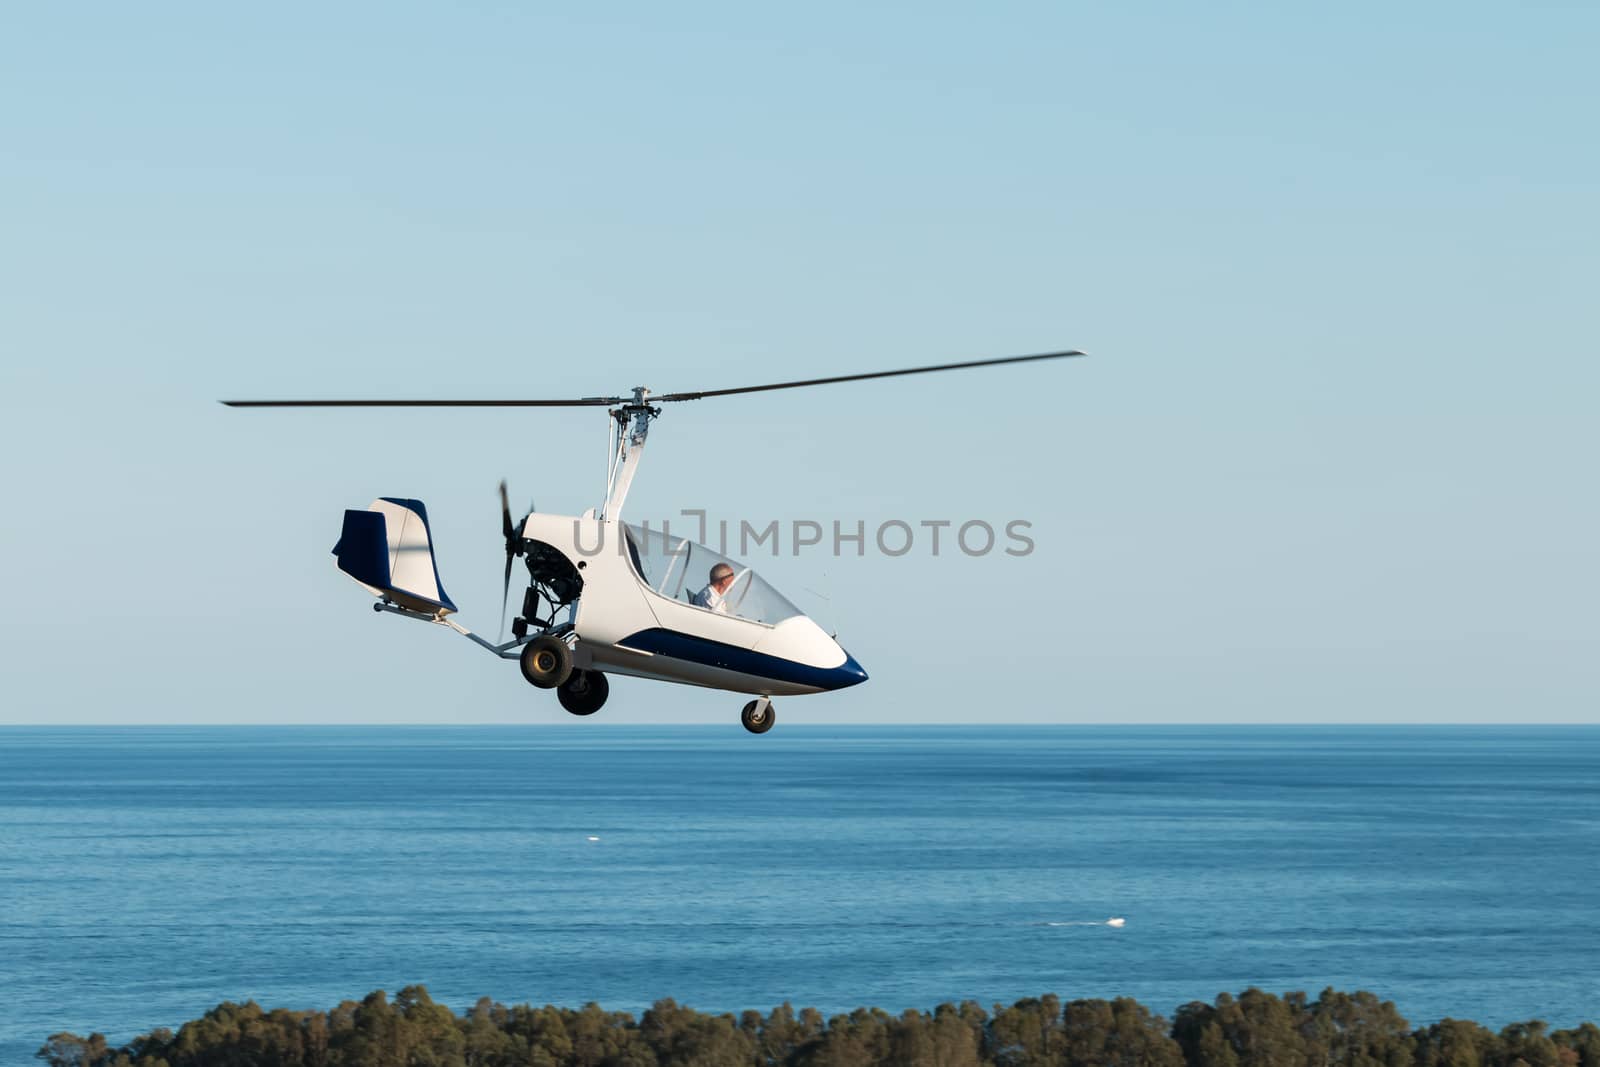 Gyrocopter by bolkan73